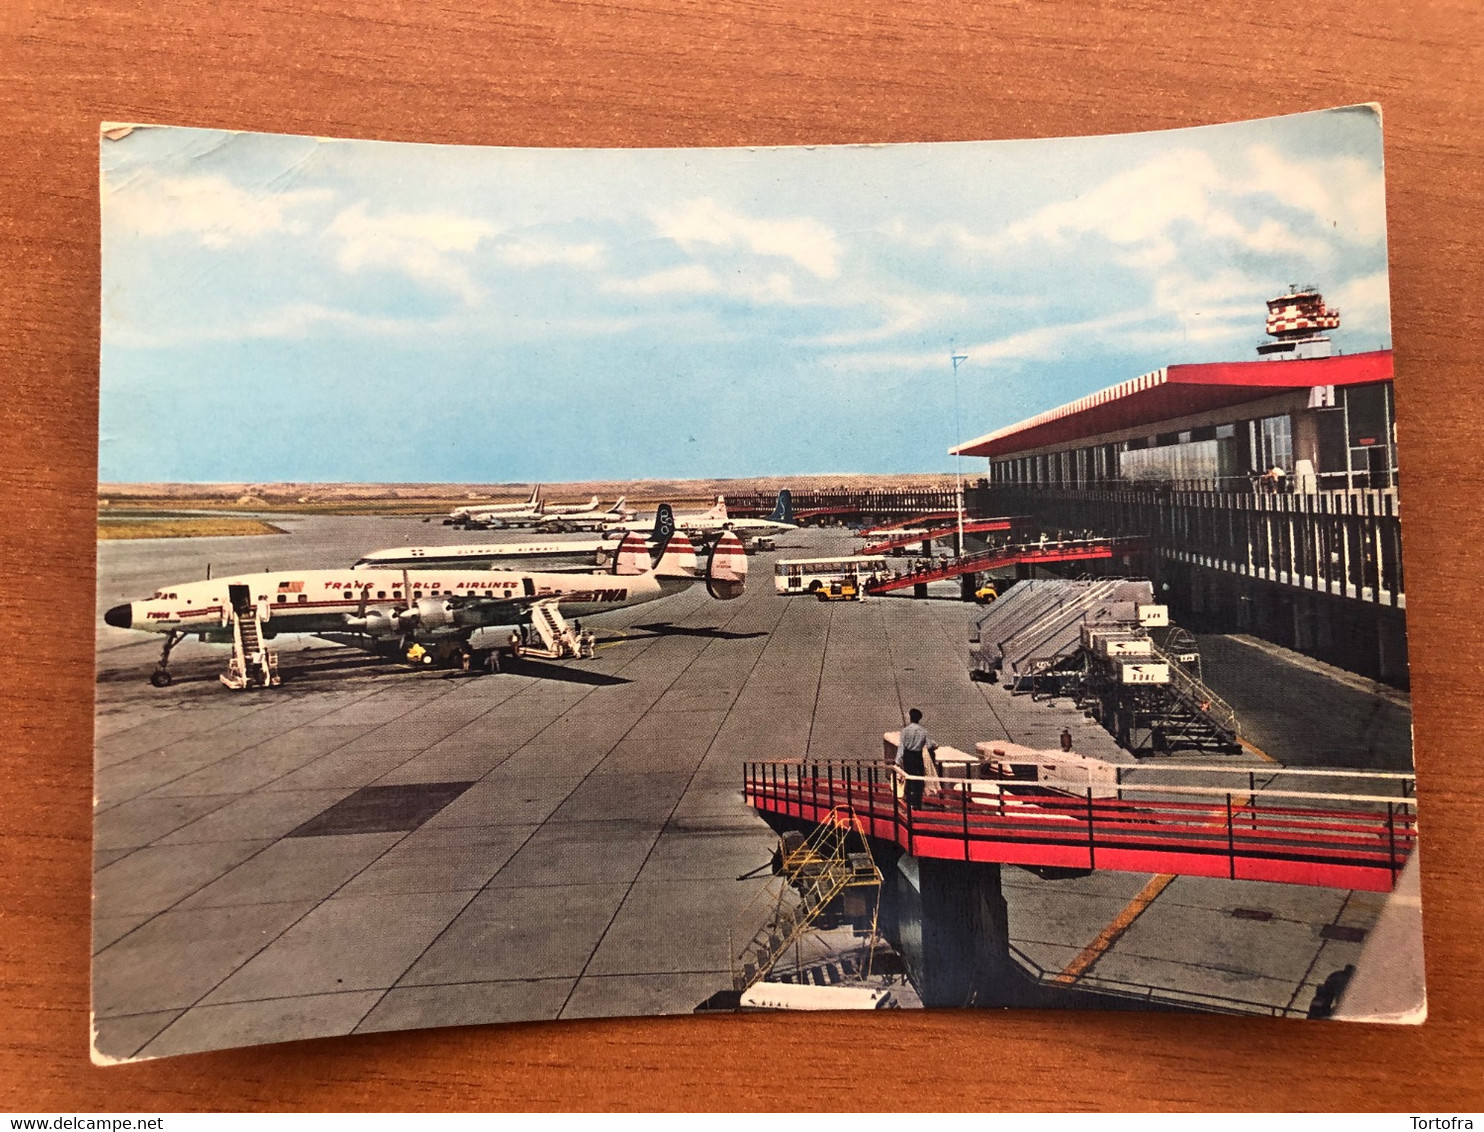 ROMA FIUMICINO AEROPORTO INTERCONTINENTALE LEONARDO DA VINCI 1961 - Transports